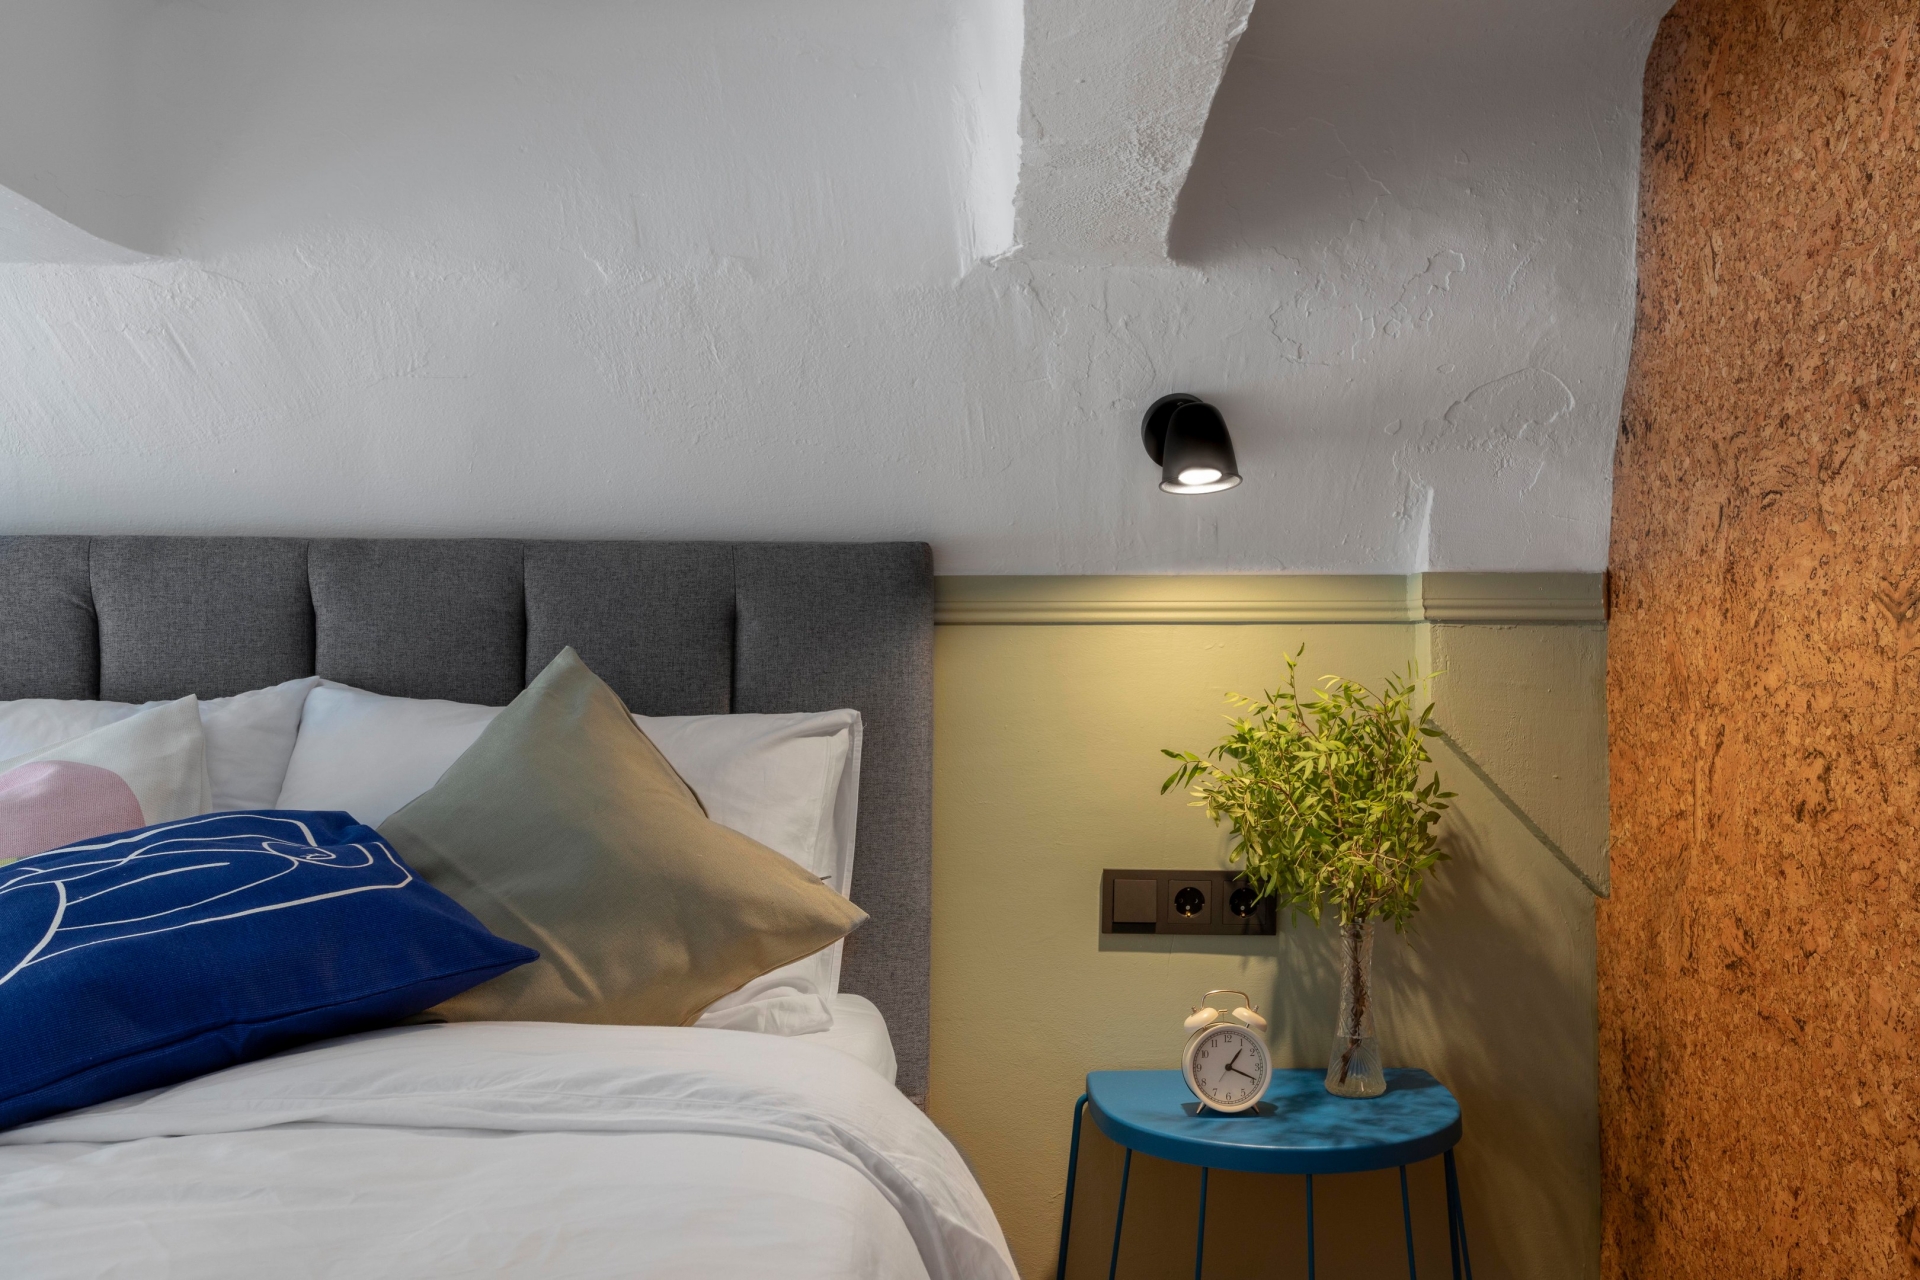 Không gian phòng ngủ được bố trí tách biệt trên gác lửng, tuy nhỏ nhưng tiện nghi với đầy đủ đèn gắn tường, táp đầu giường, lọ cây cảnh sống động. Thêm vào đó một bề mặt tường ốp gỗ bần để chủ nhân có thể tùy ý ghim hình ảnh, ghi chú hoặc trang trí theo sở thích.